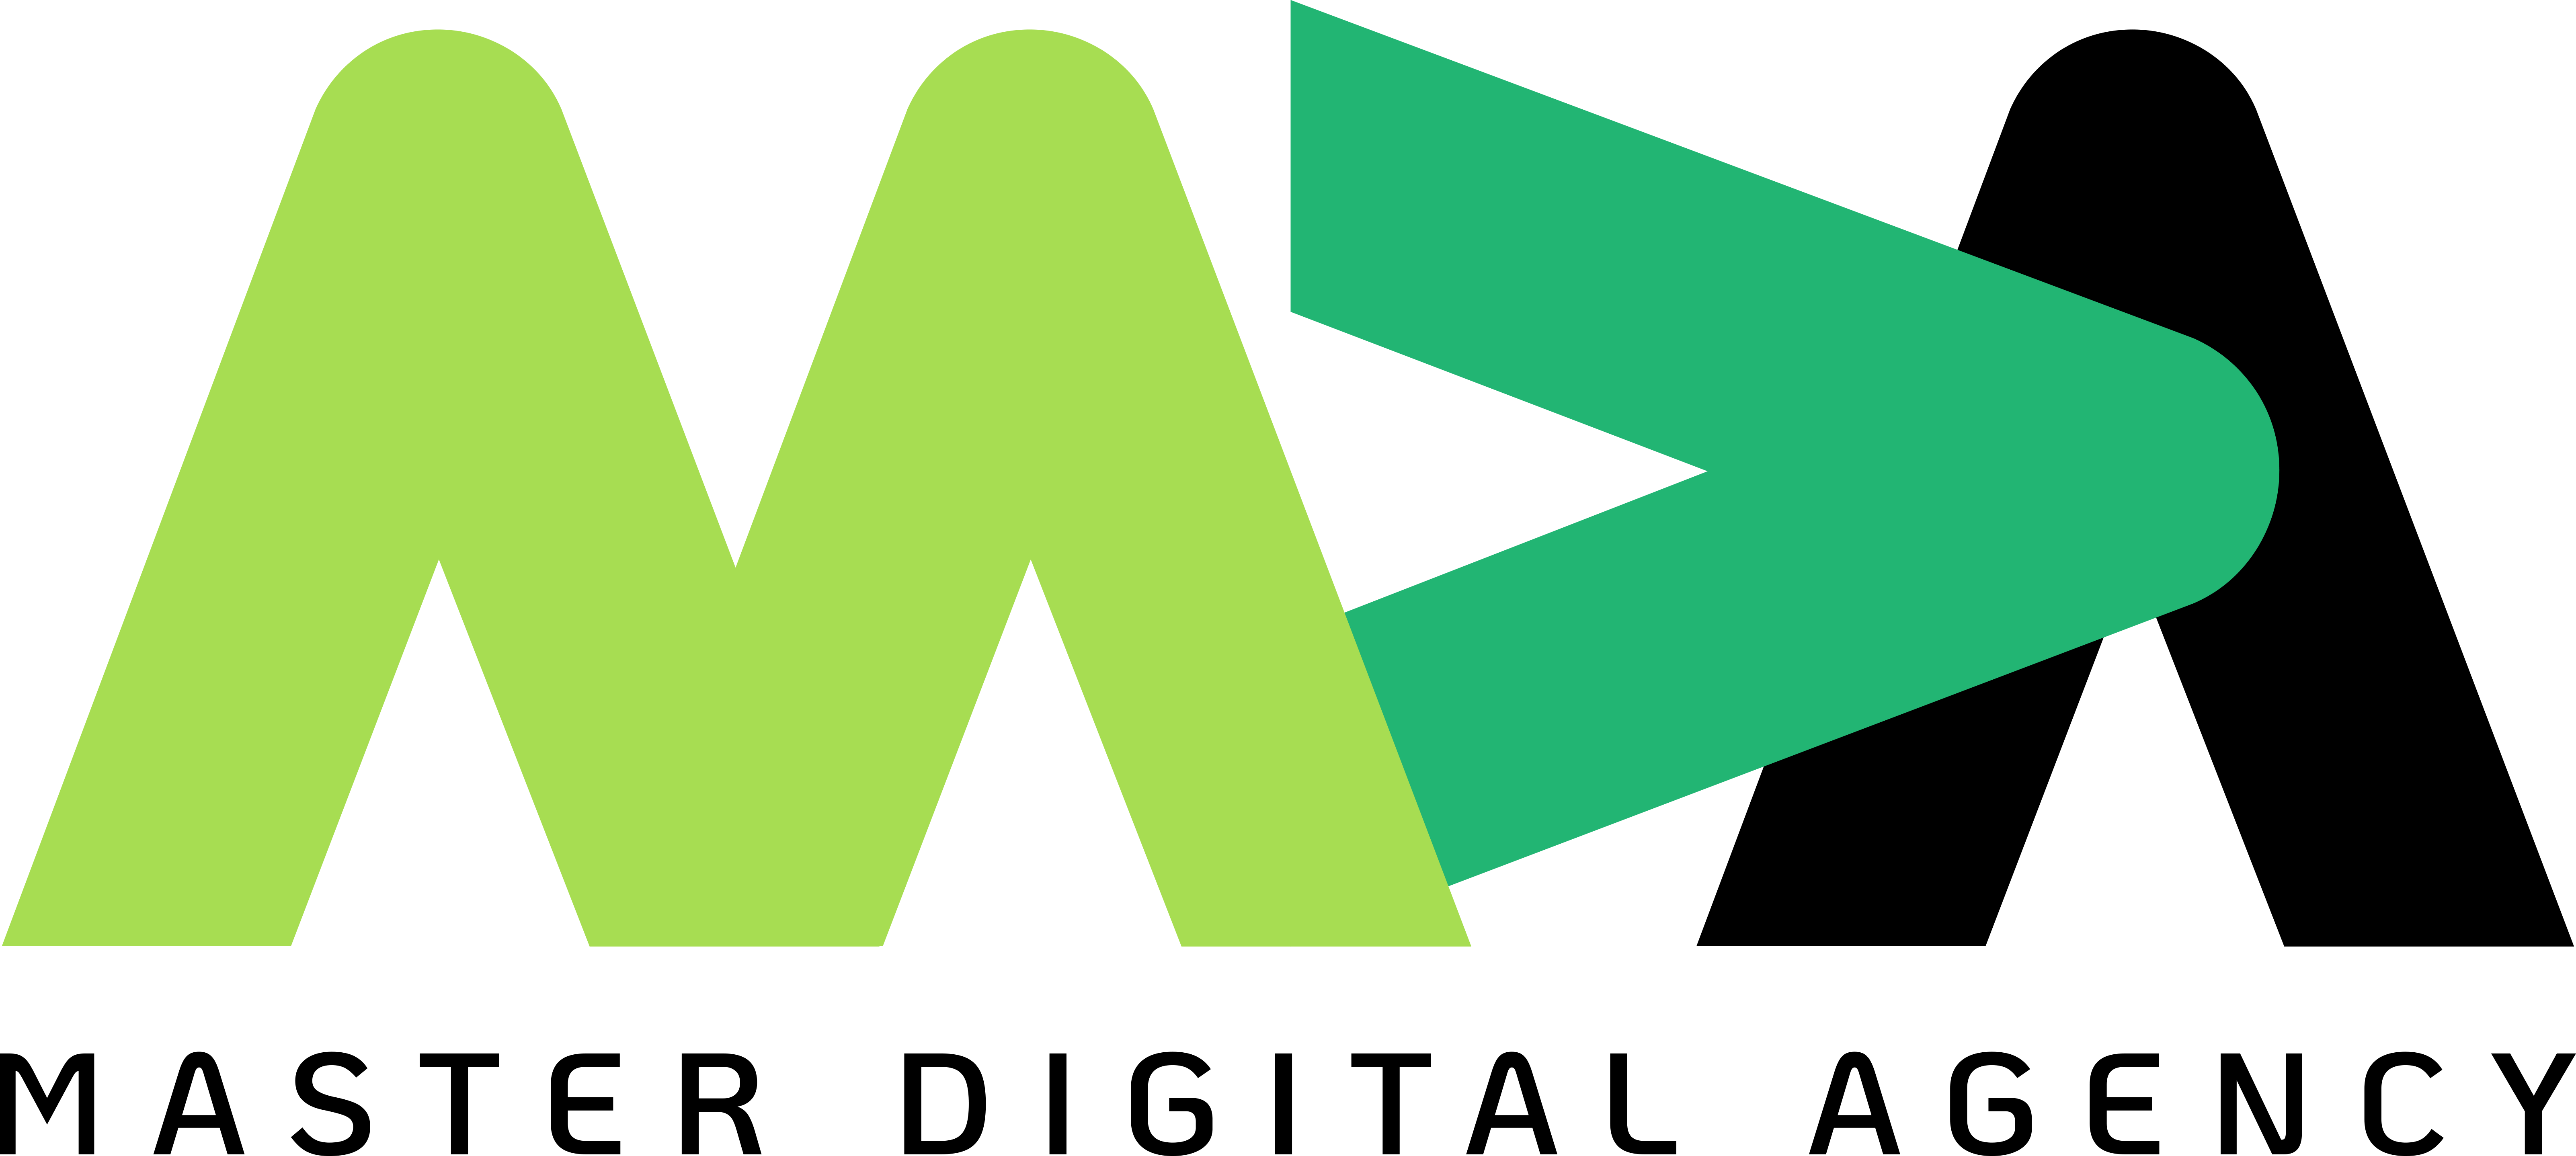 masterdigitalagency logo